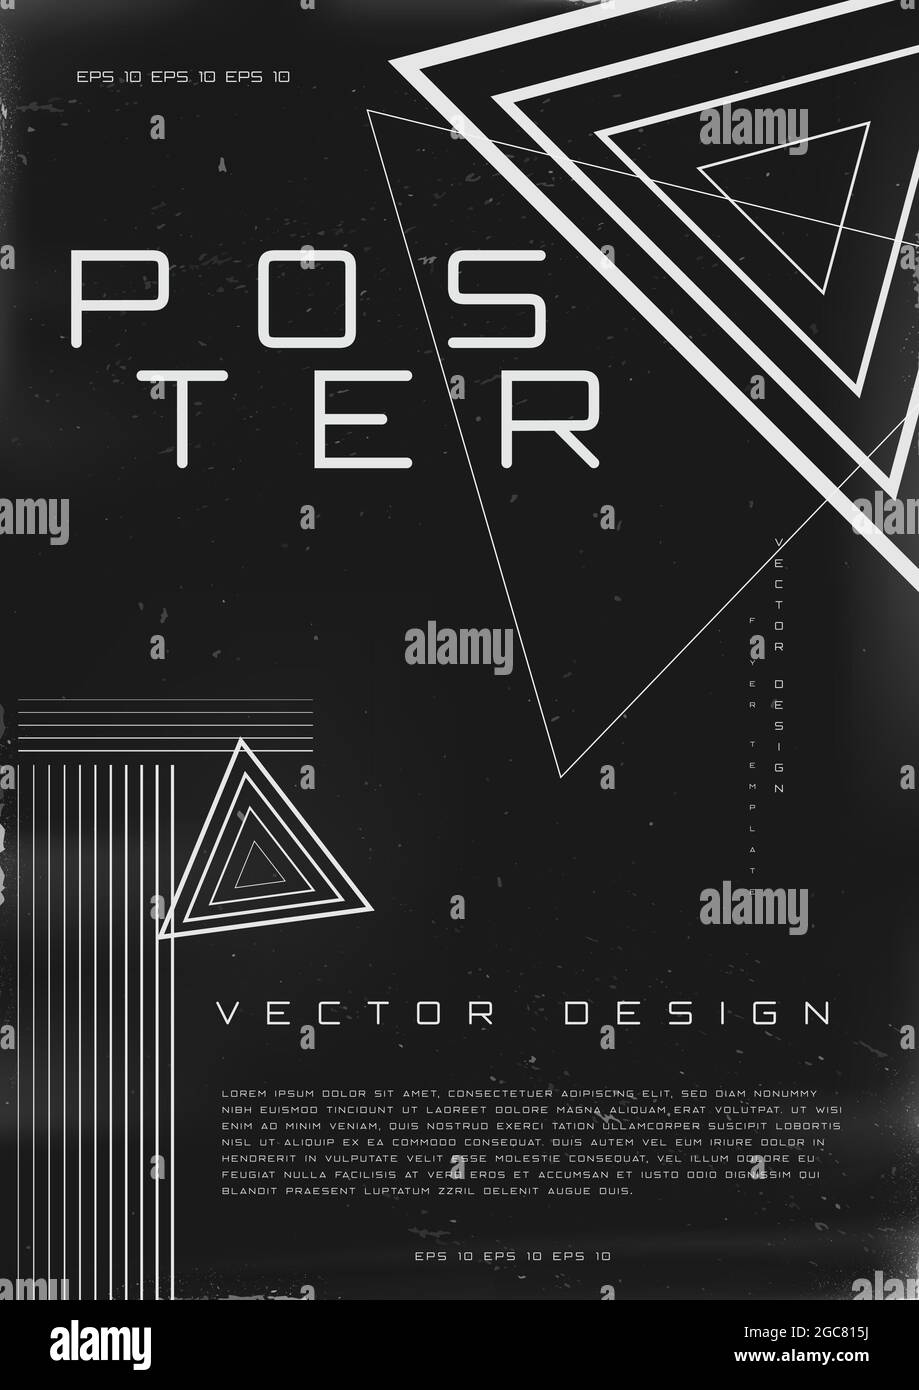 Poster dal design retrovuturistico. Poster in stile Cyberpunk 80s con forme triangolari. Modello shabby graffiato flyer per il tuo design. Vettore Illustrazione Vettoriale